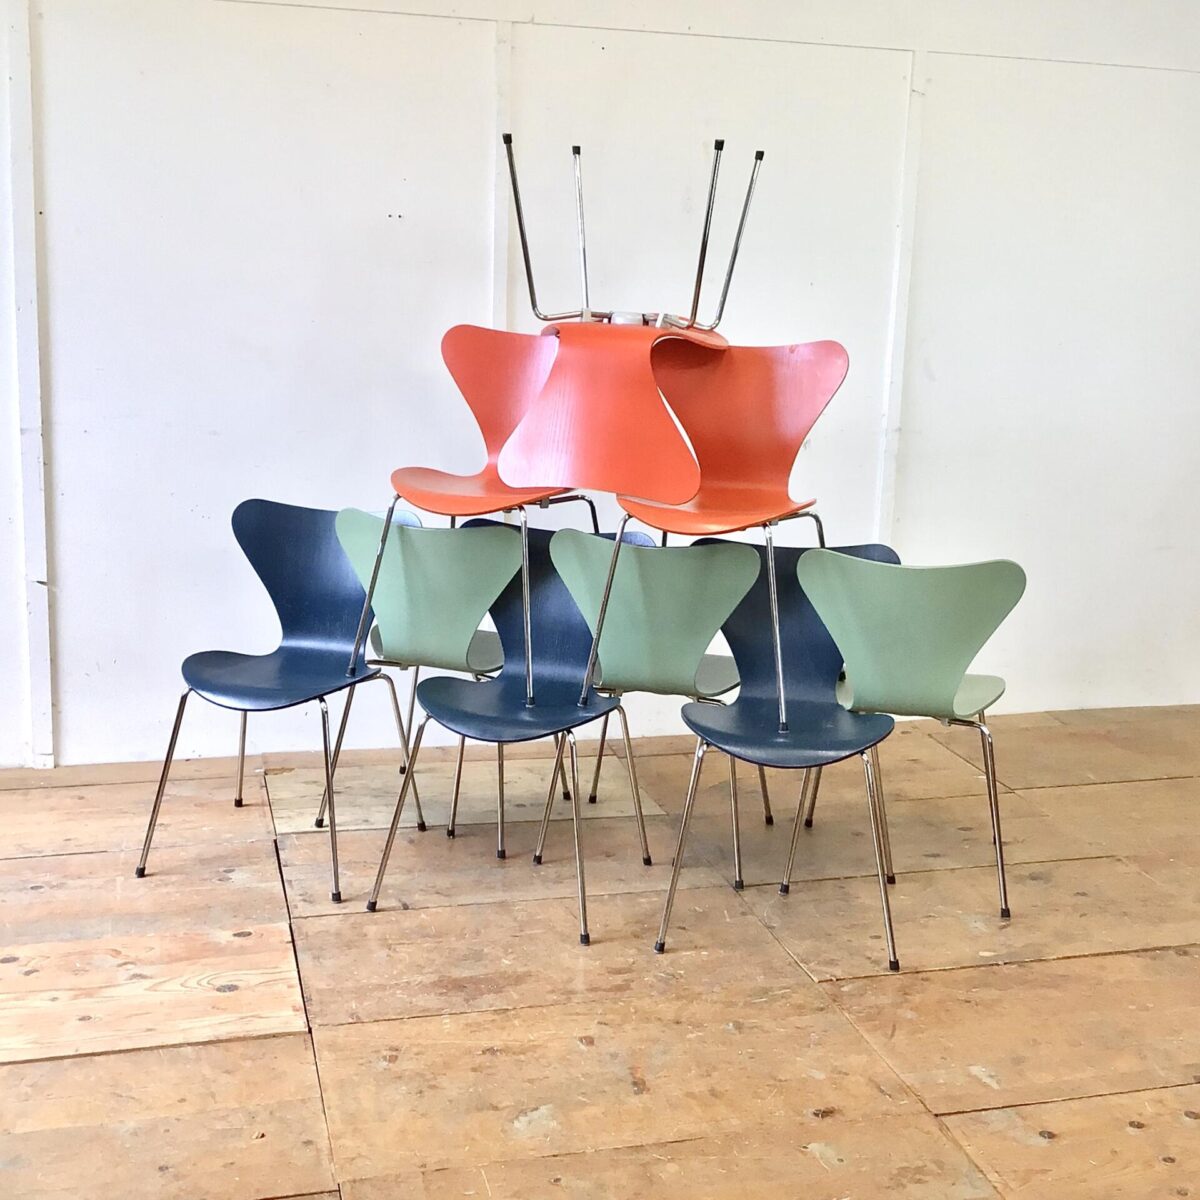 9 Arne Jacobsen Stühle von Fritz Hansen. Preis pro Stuhl. Je 3 in der gleichen Farbe. Sitzschalen teilweise leicht abgewetzt. Technisch in einwandfreiem Zustand.